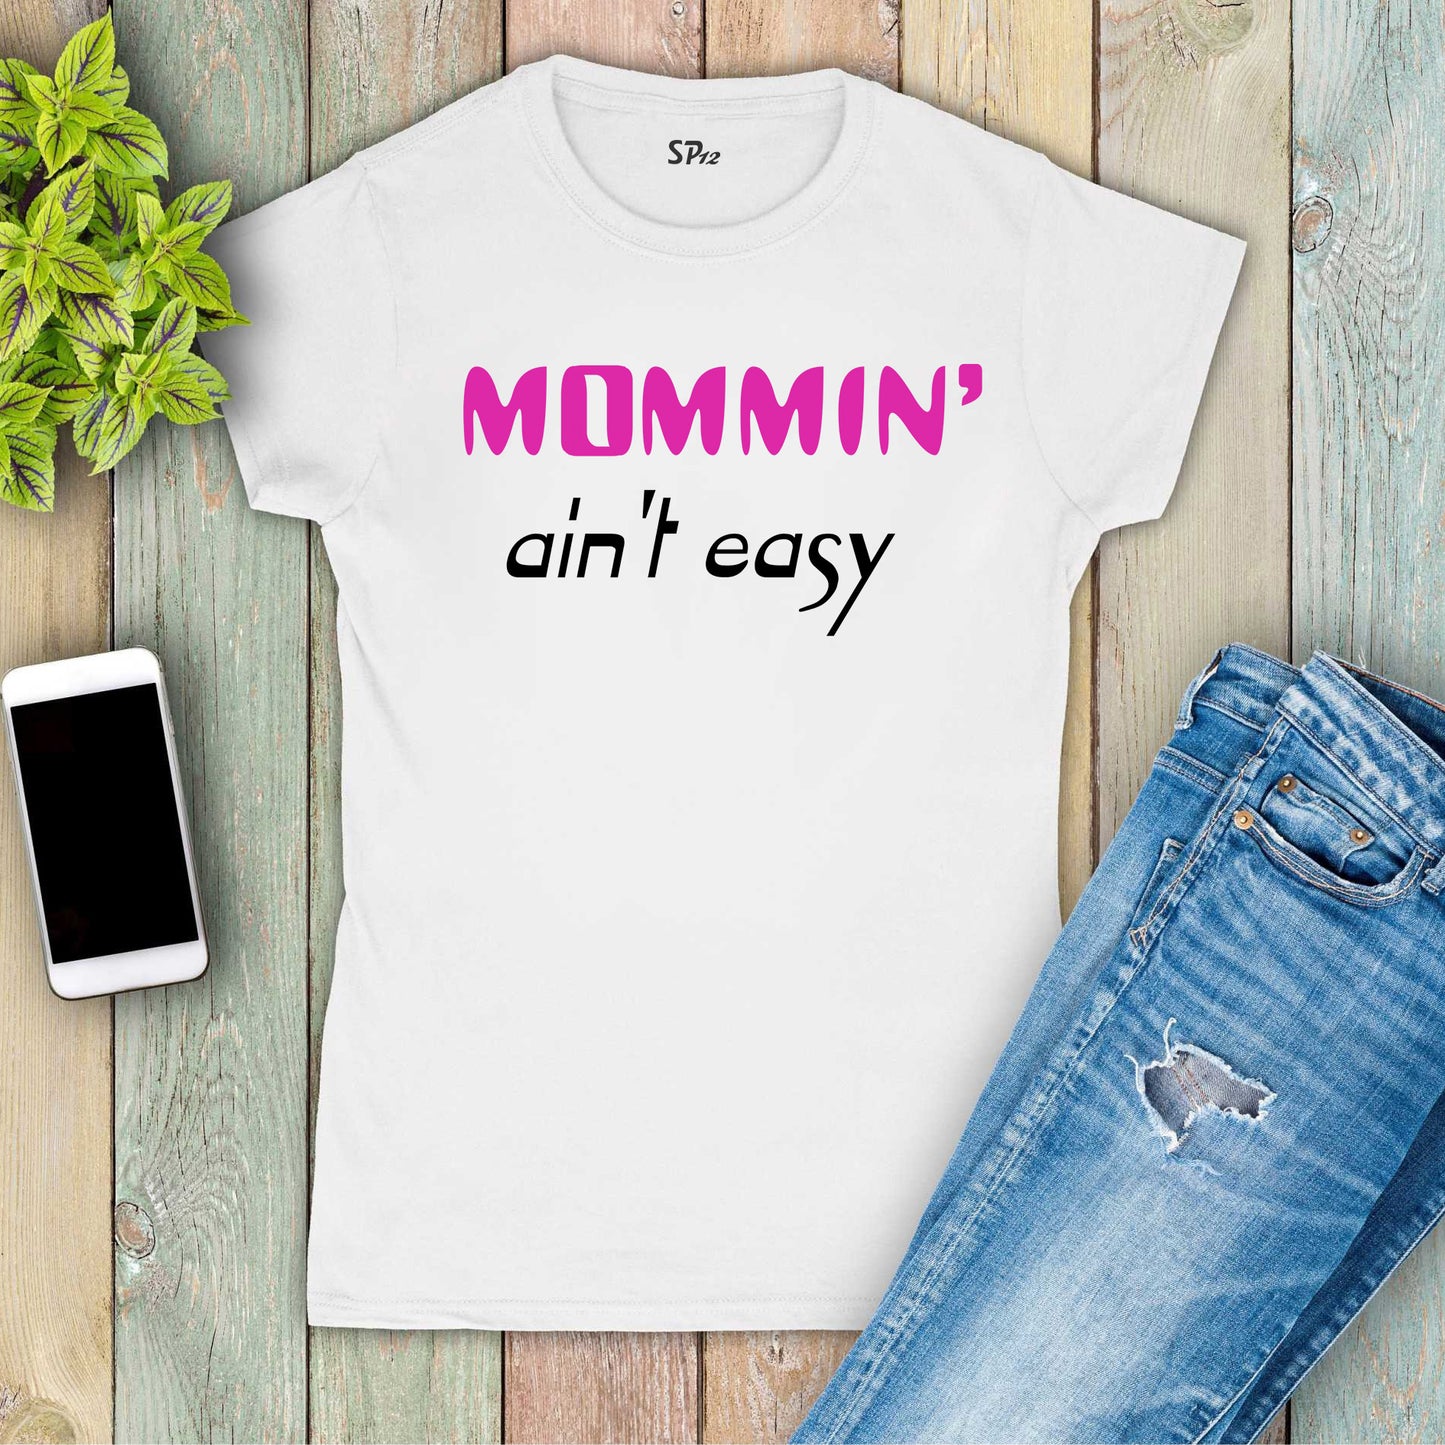 Mom Family T Shirt Mommin Ain't Easy Funny Slogan T-shirt Tee